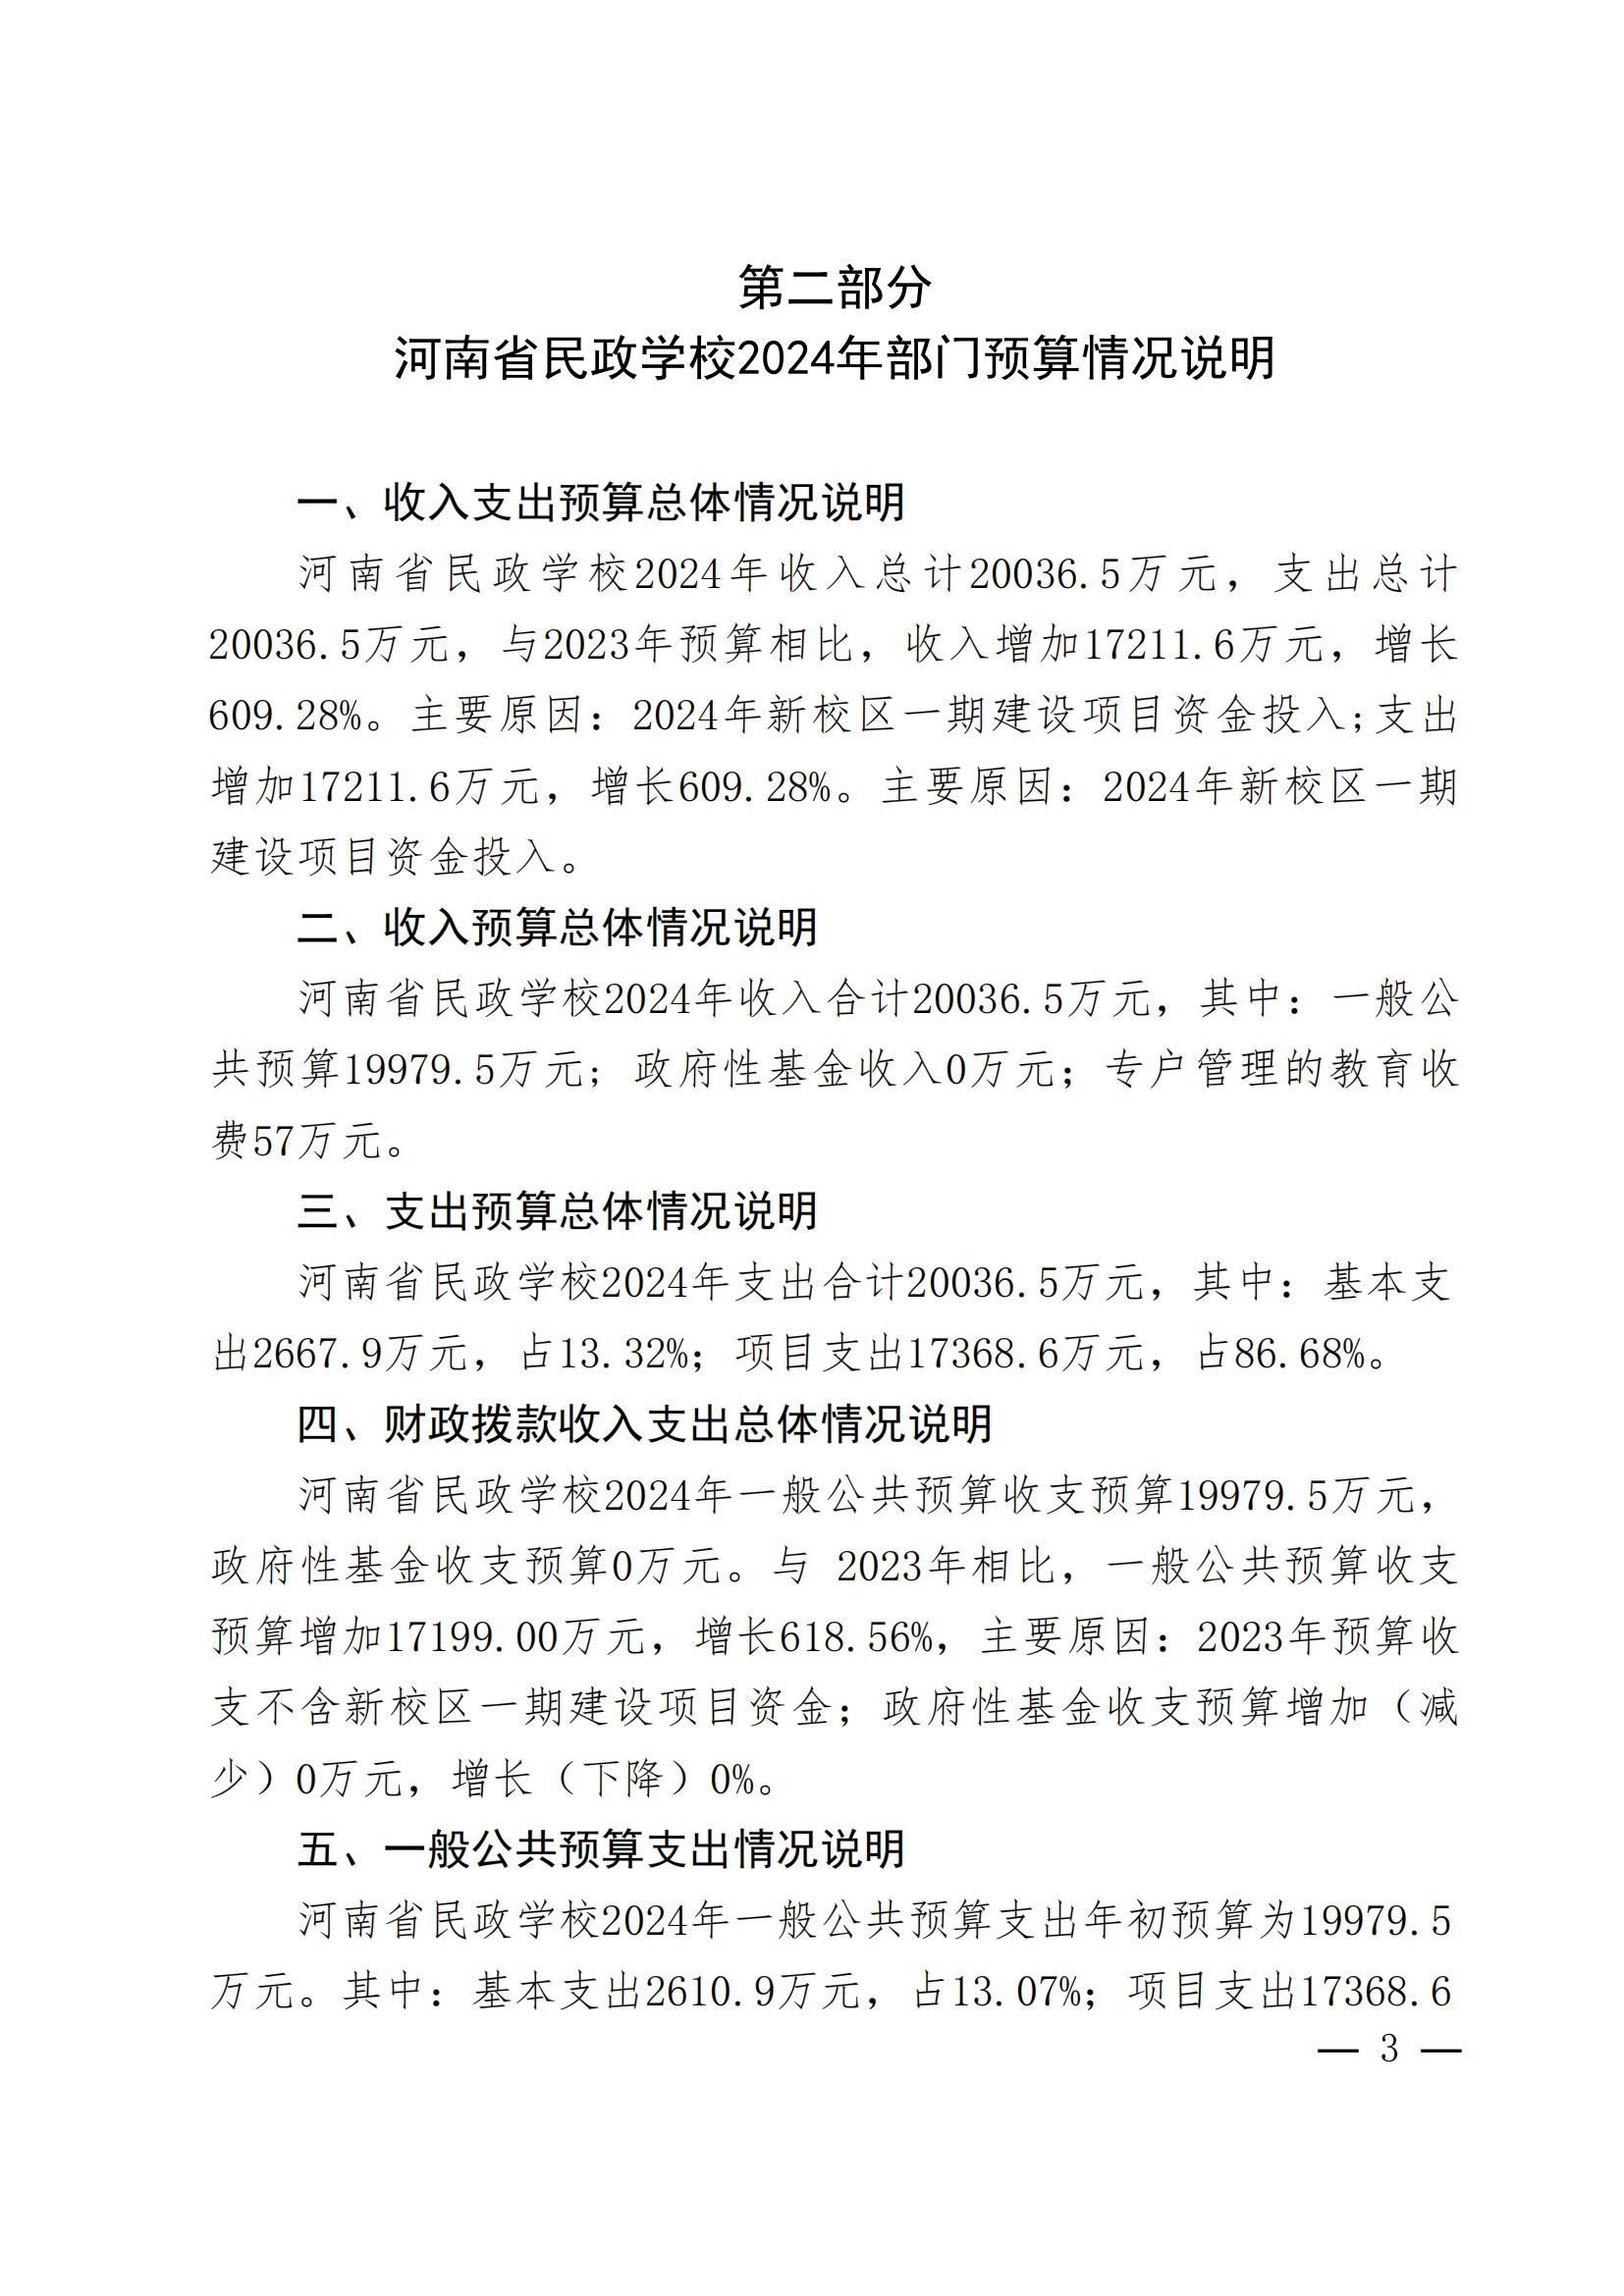 河南省民政学校2024年部门预算公开(1)_02.jpg